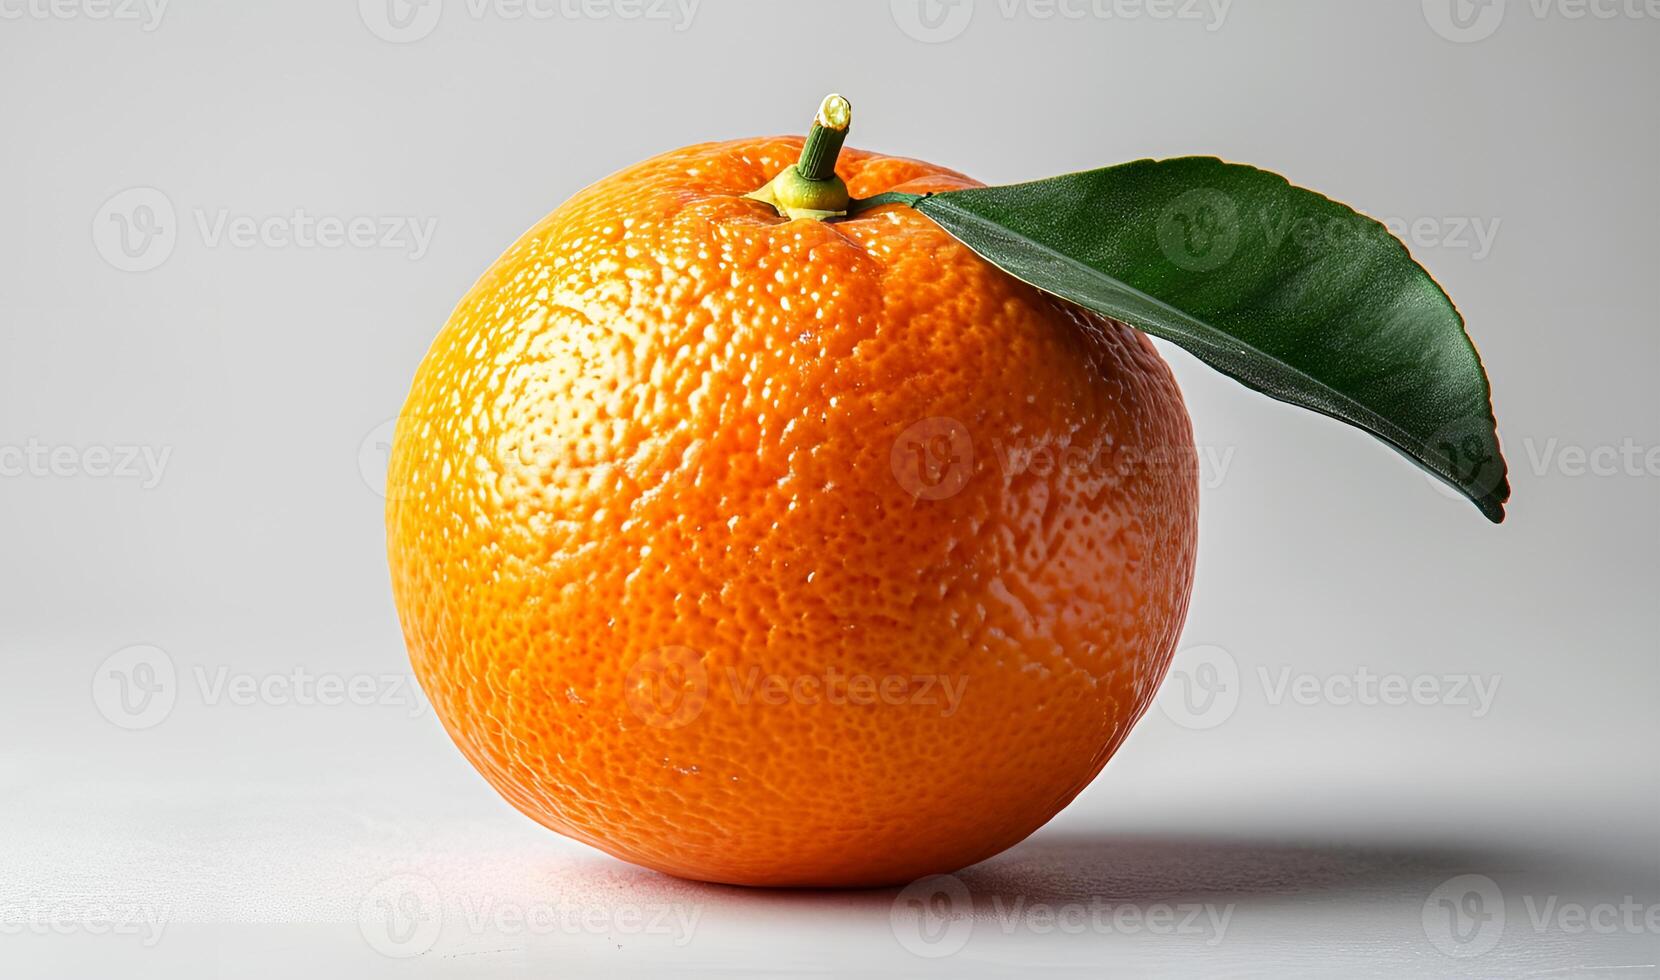 ai gerado Visão do delicioso fresco mandarim, laranja, e de outros fruta em uma branco fundo foto